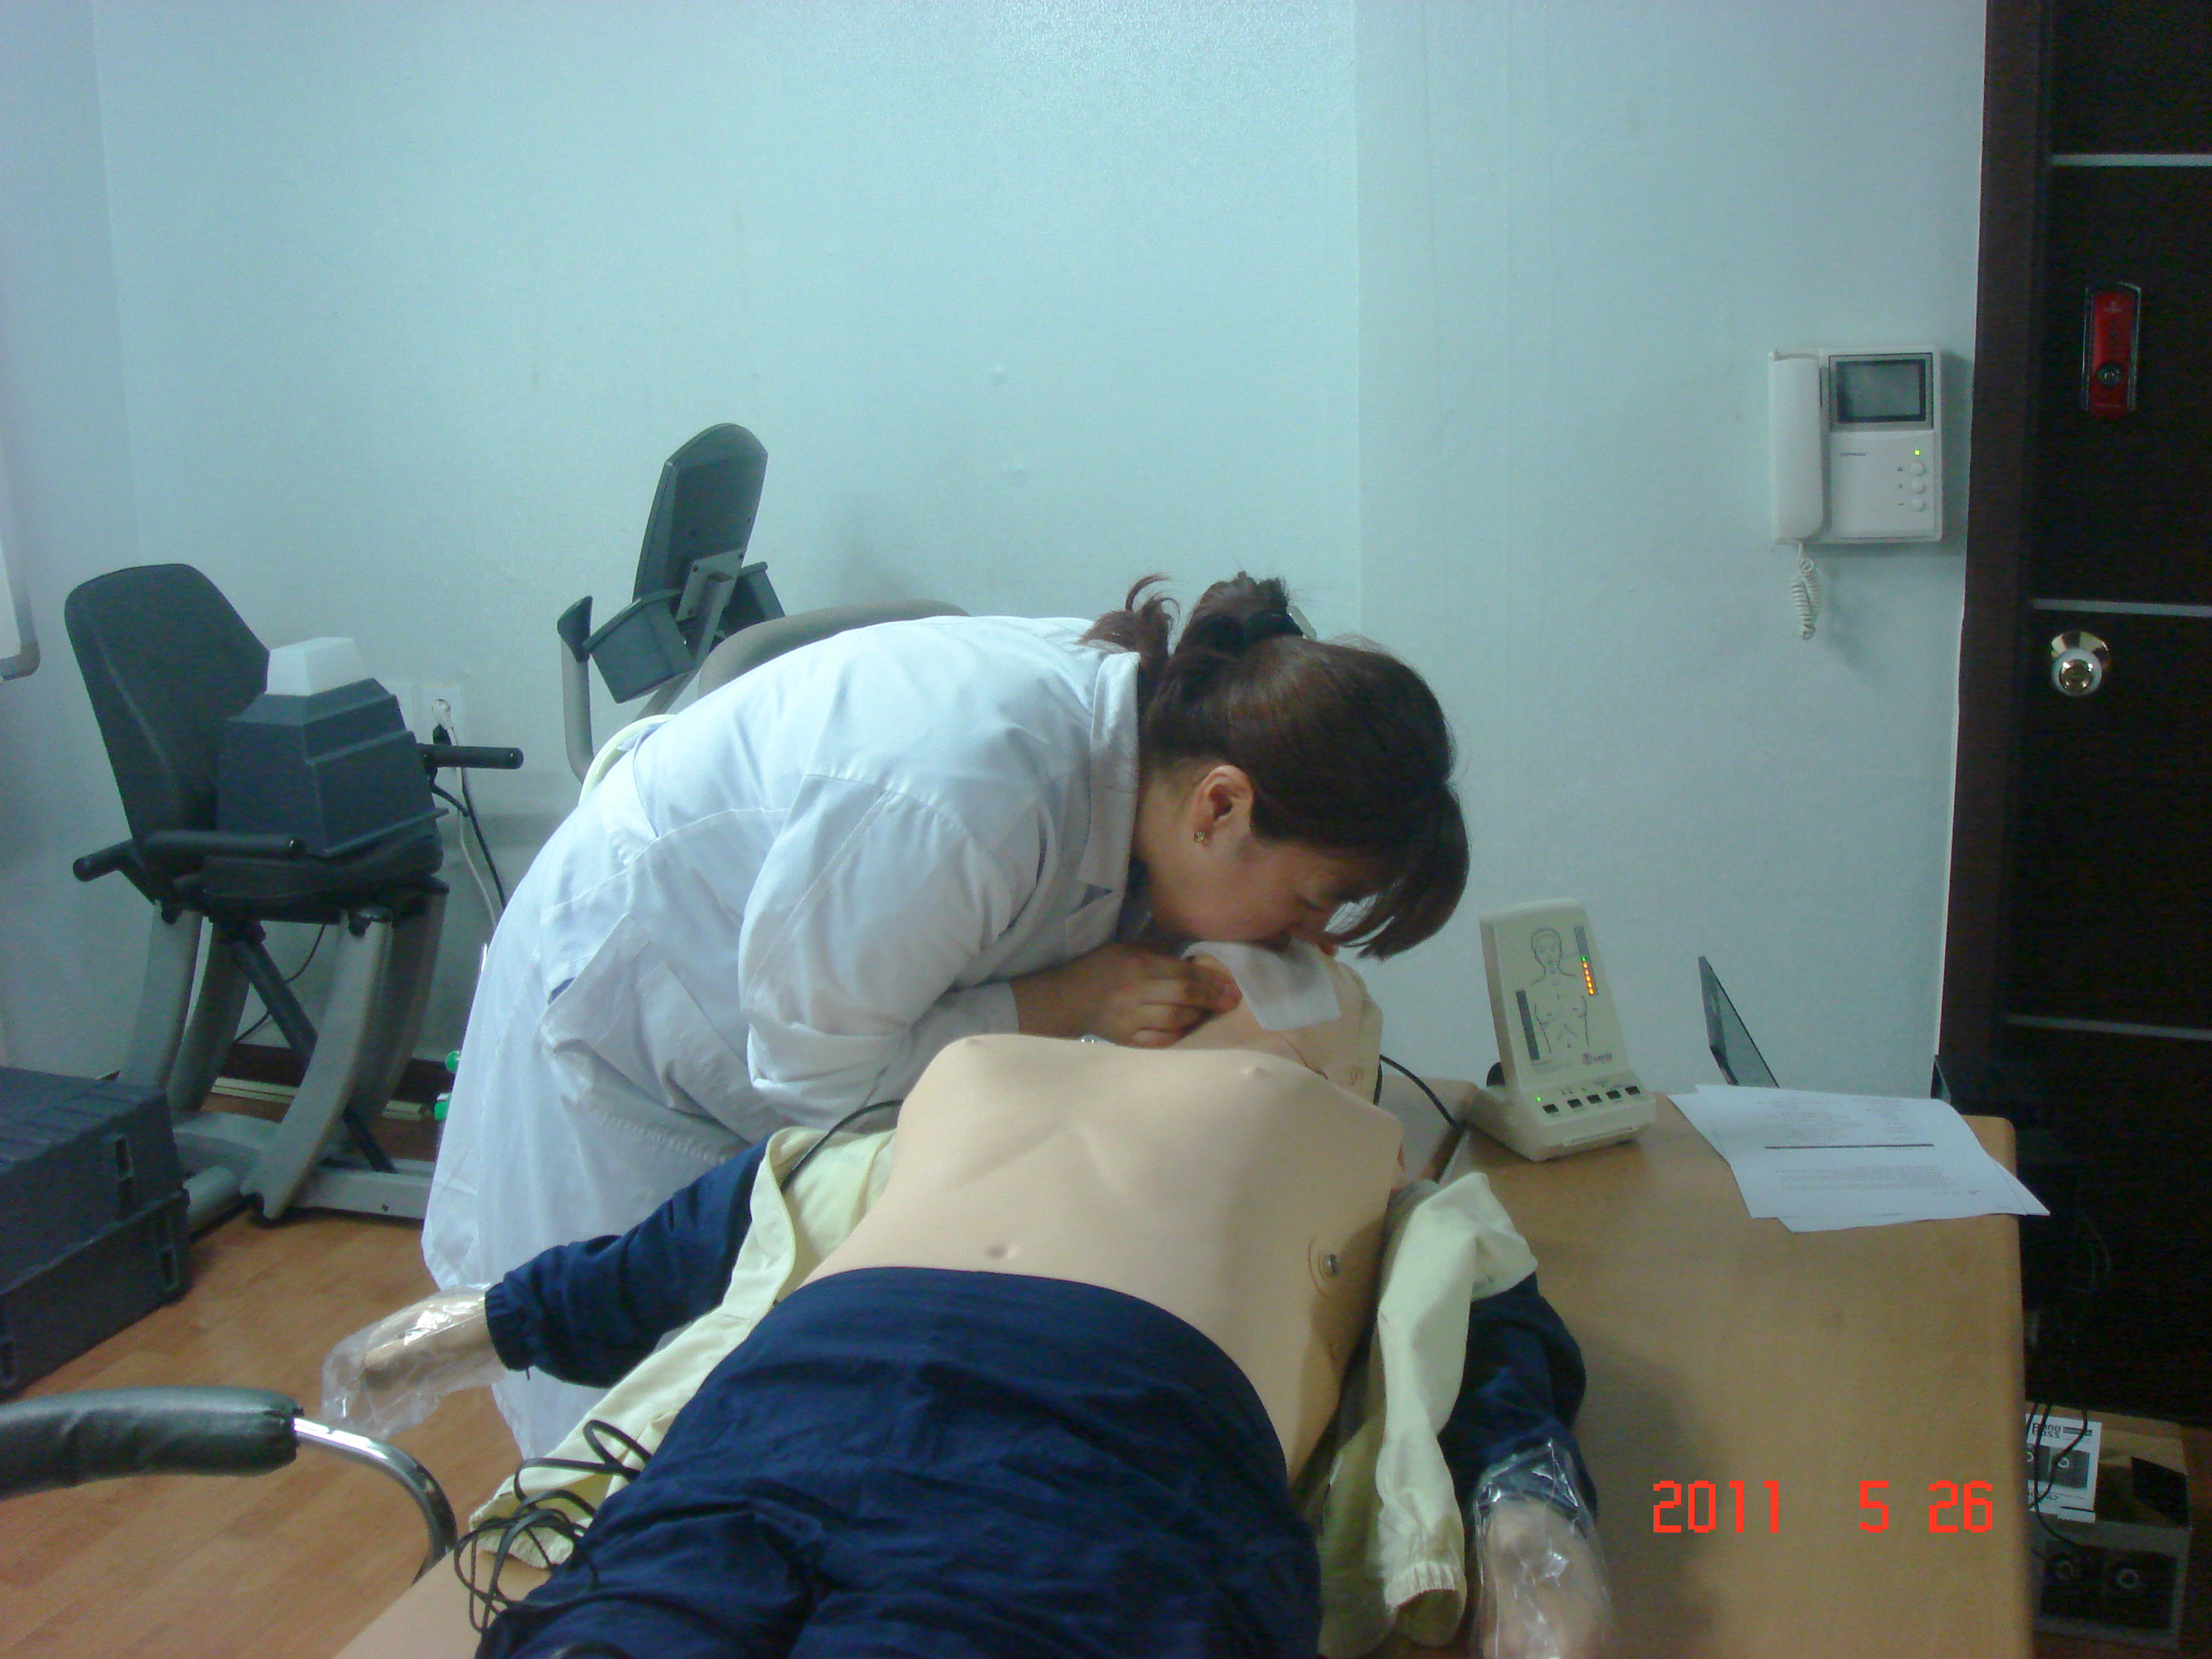 [강북점] 2011년 5월 26일 - 전직원 직무교육 실시 (심폐소생술, CPR) 게시글의 8번째 첨부파일입니다.